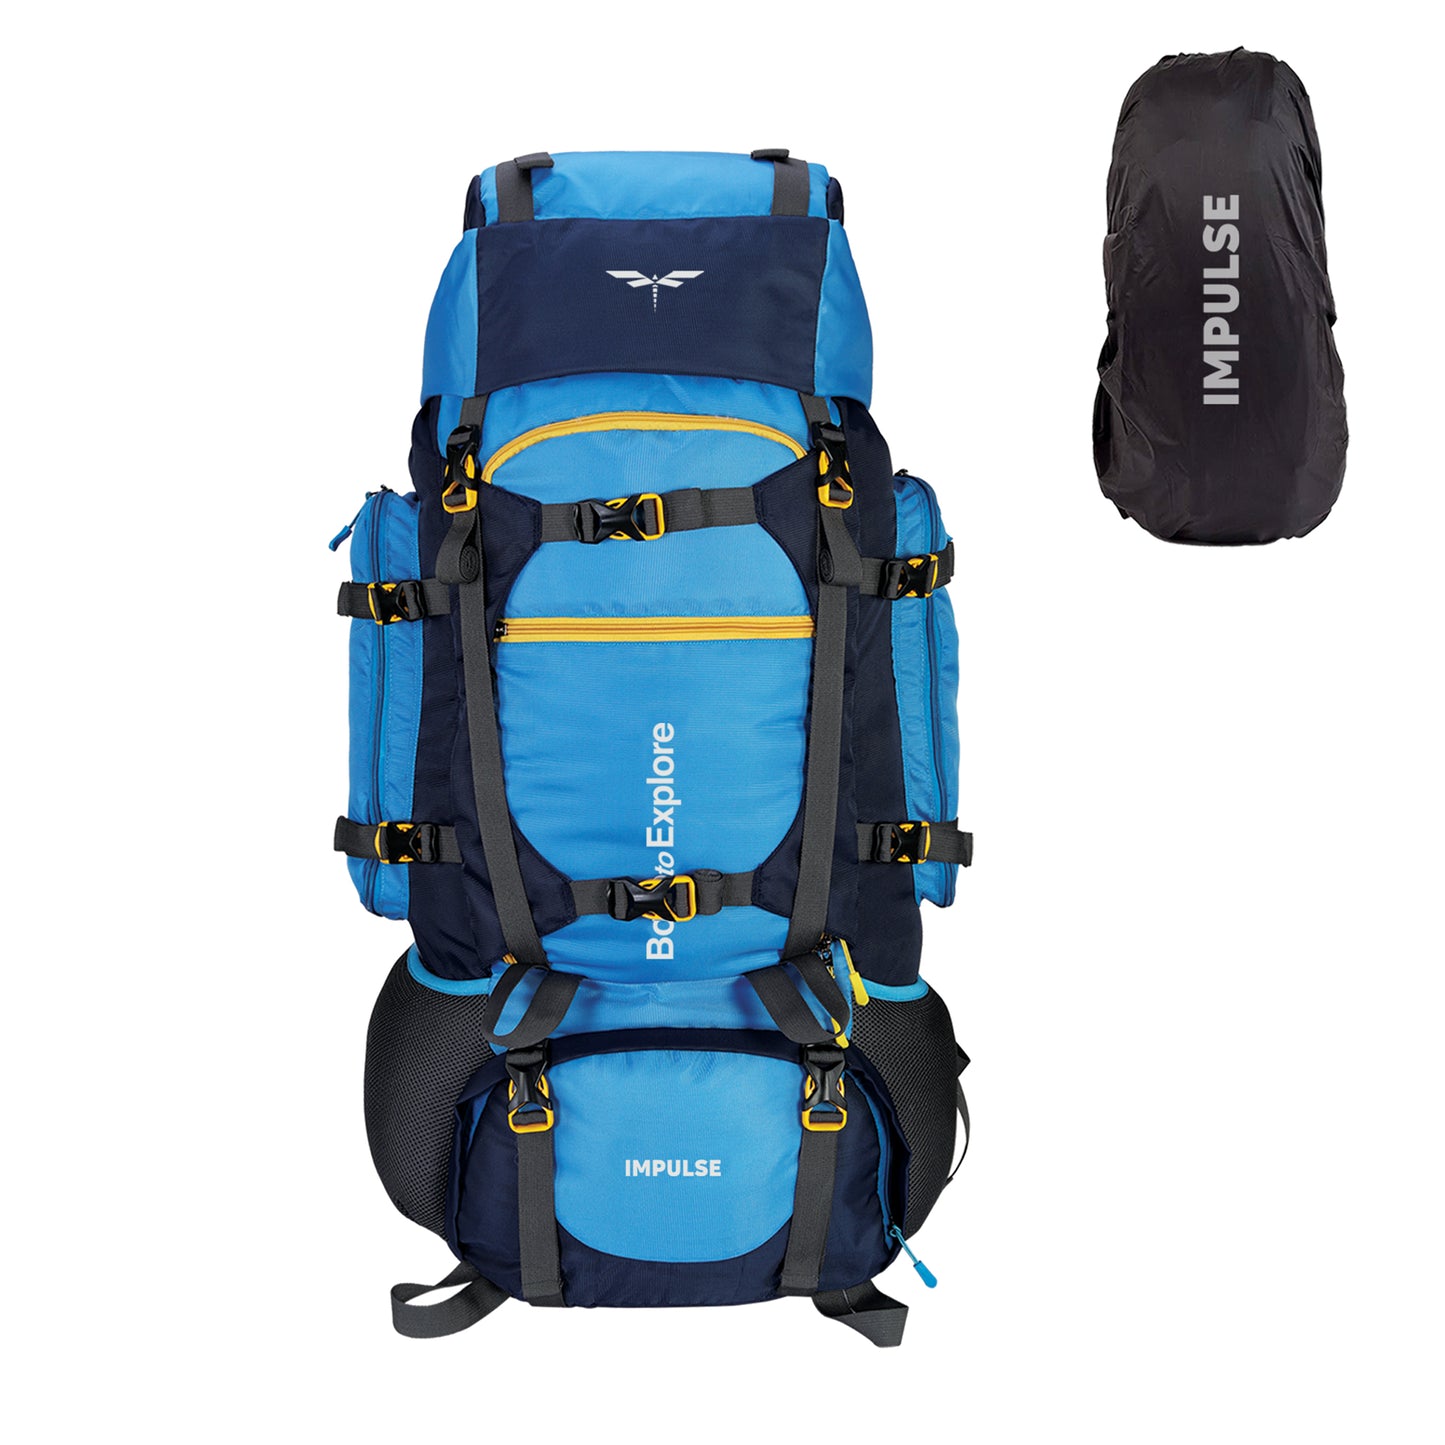 Buy Impulse Rucksack bags 80 litres travel bag for men tourist bag